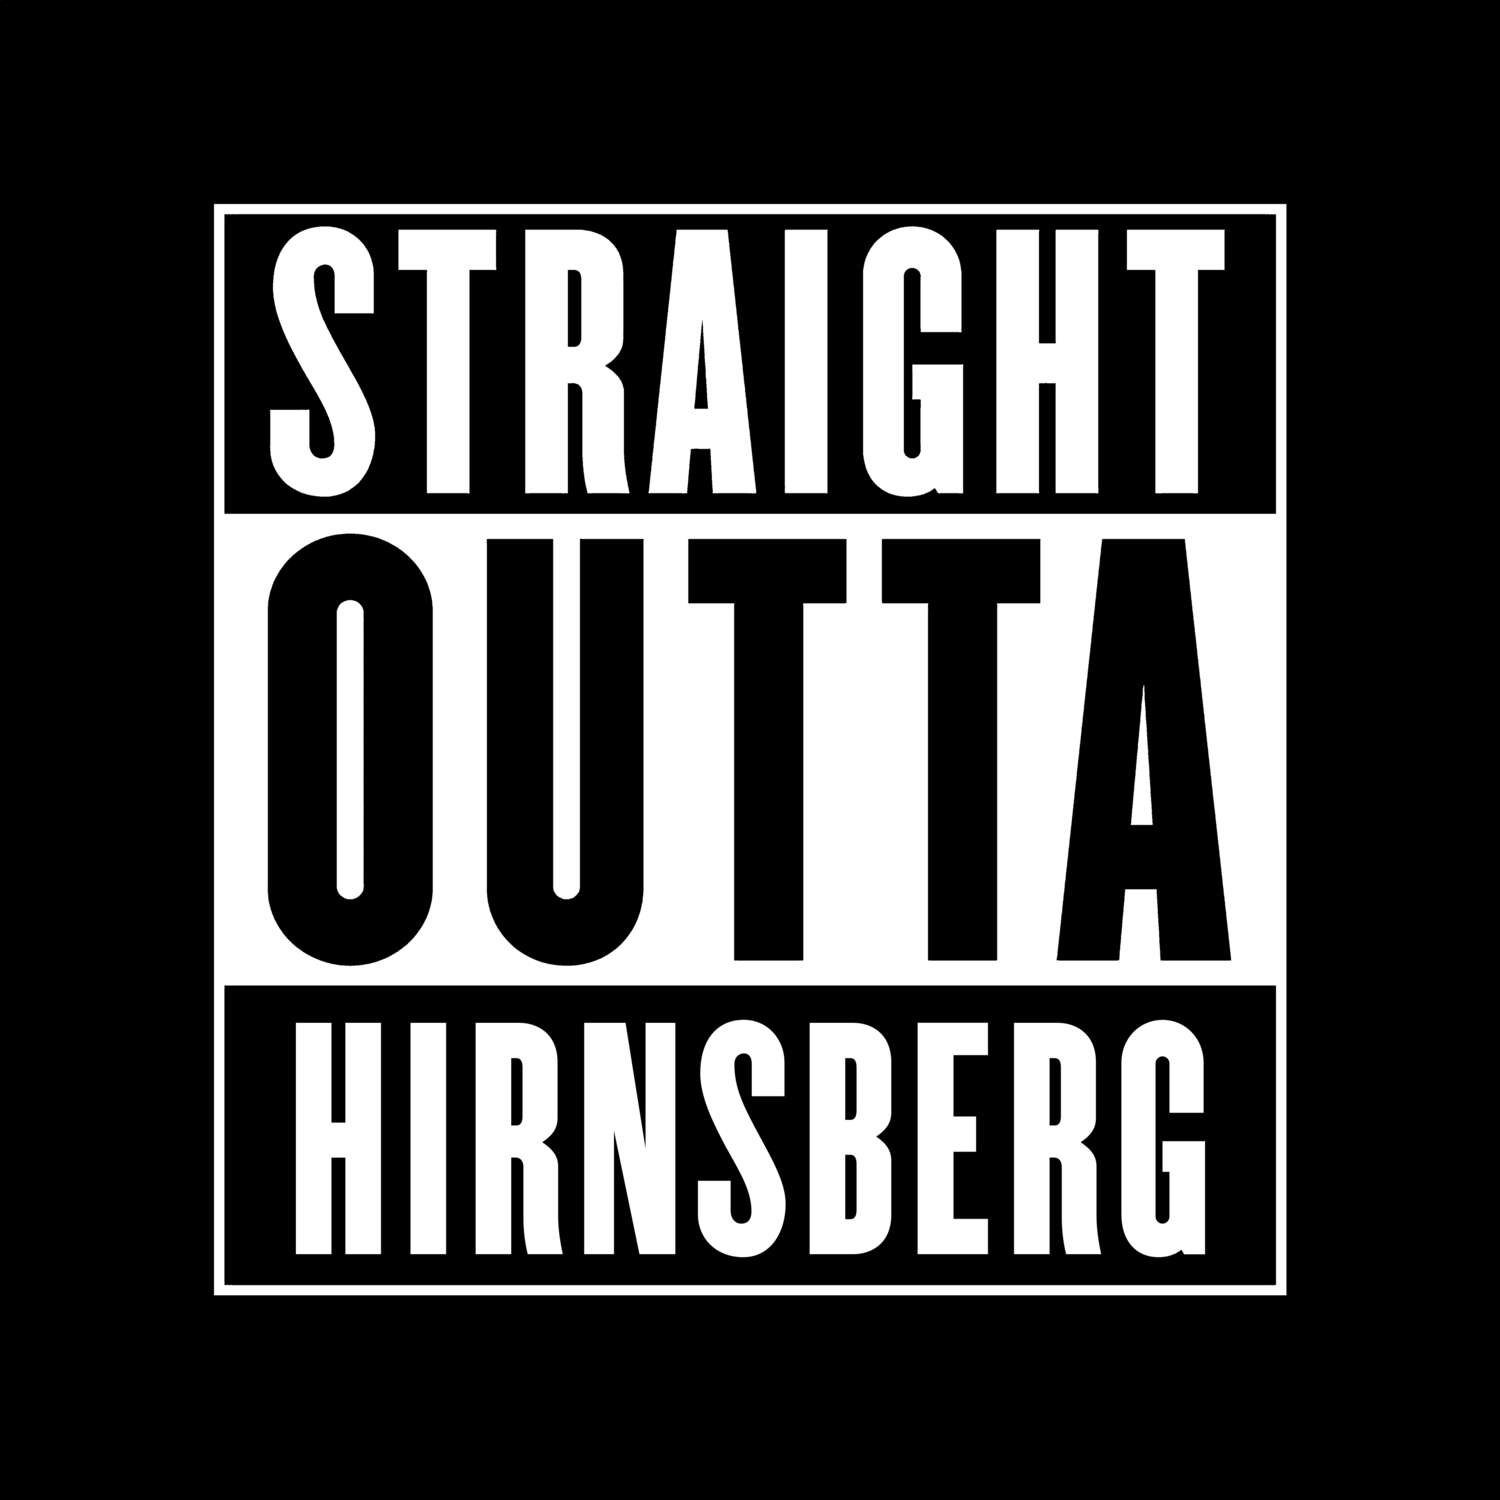 Hirnsberg T-Shirt »Straight Outta«